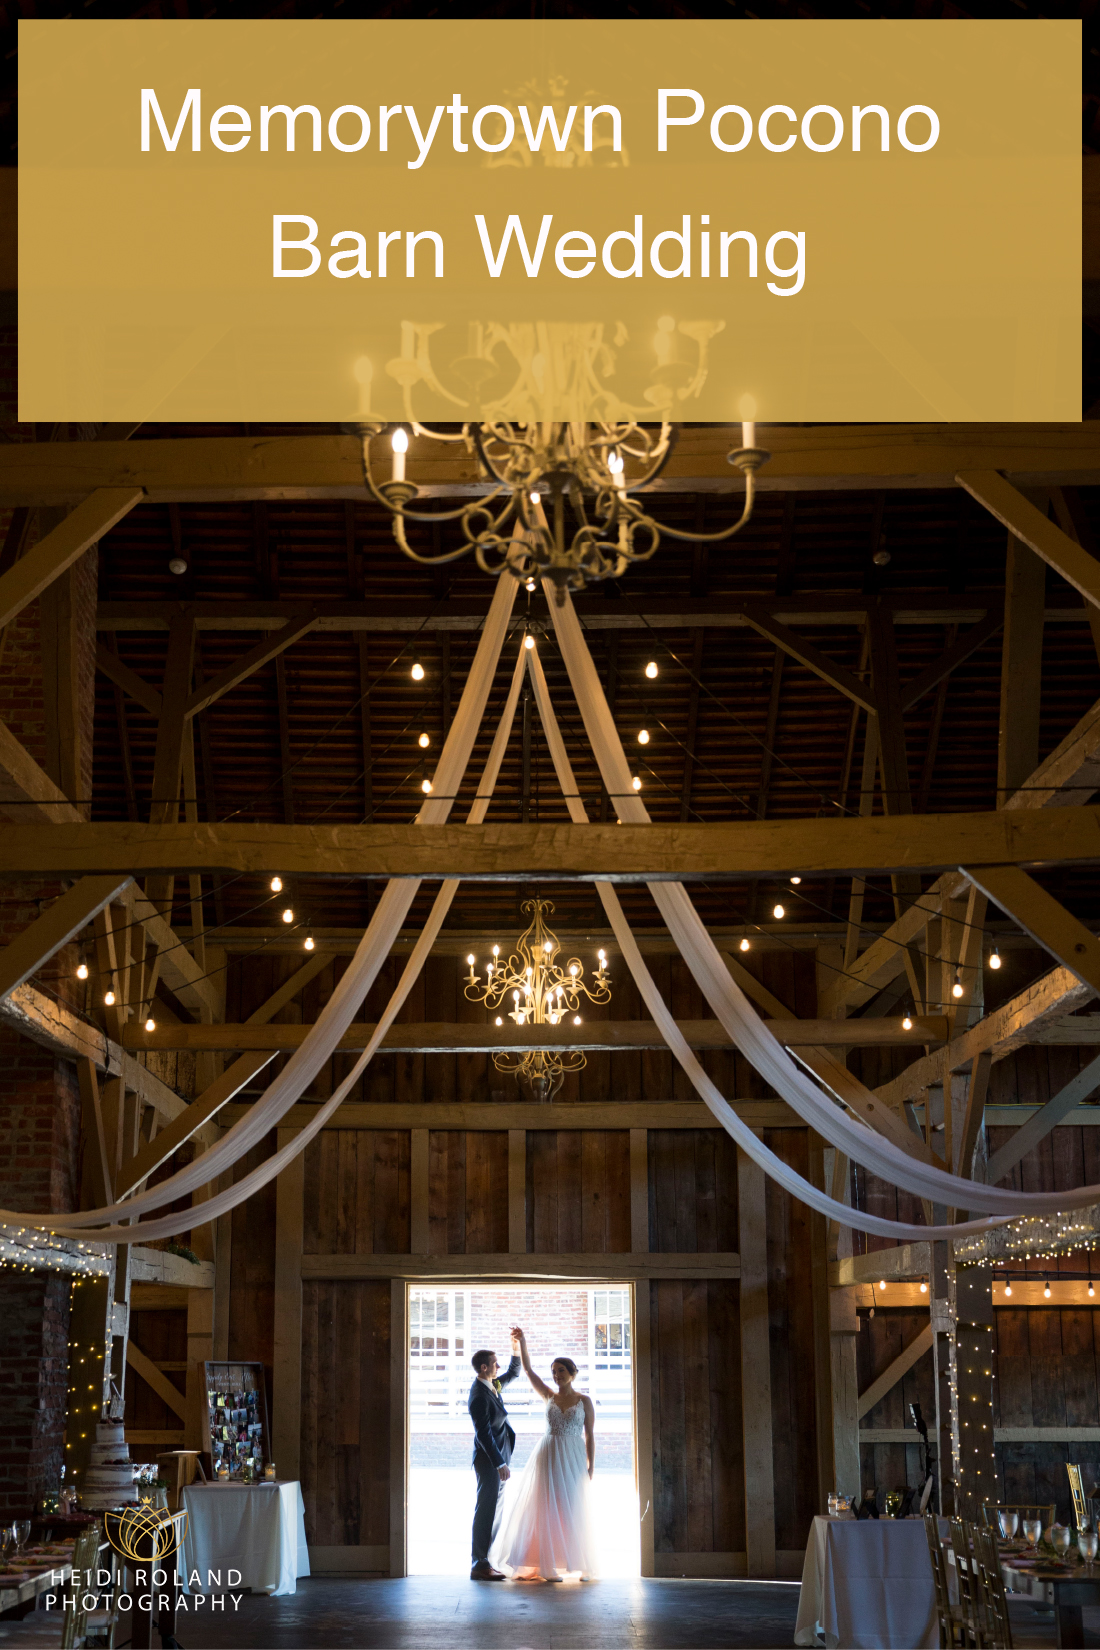 Pocono Barn Wedding Venue